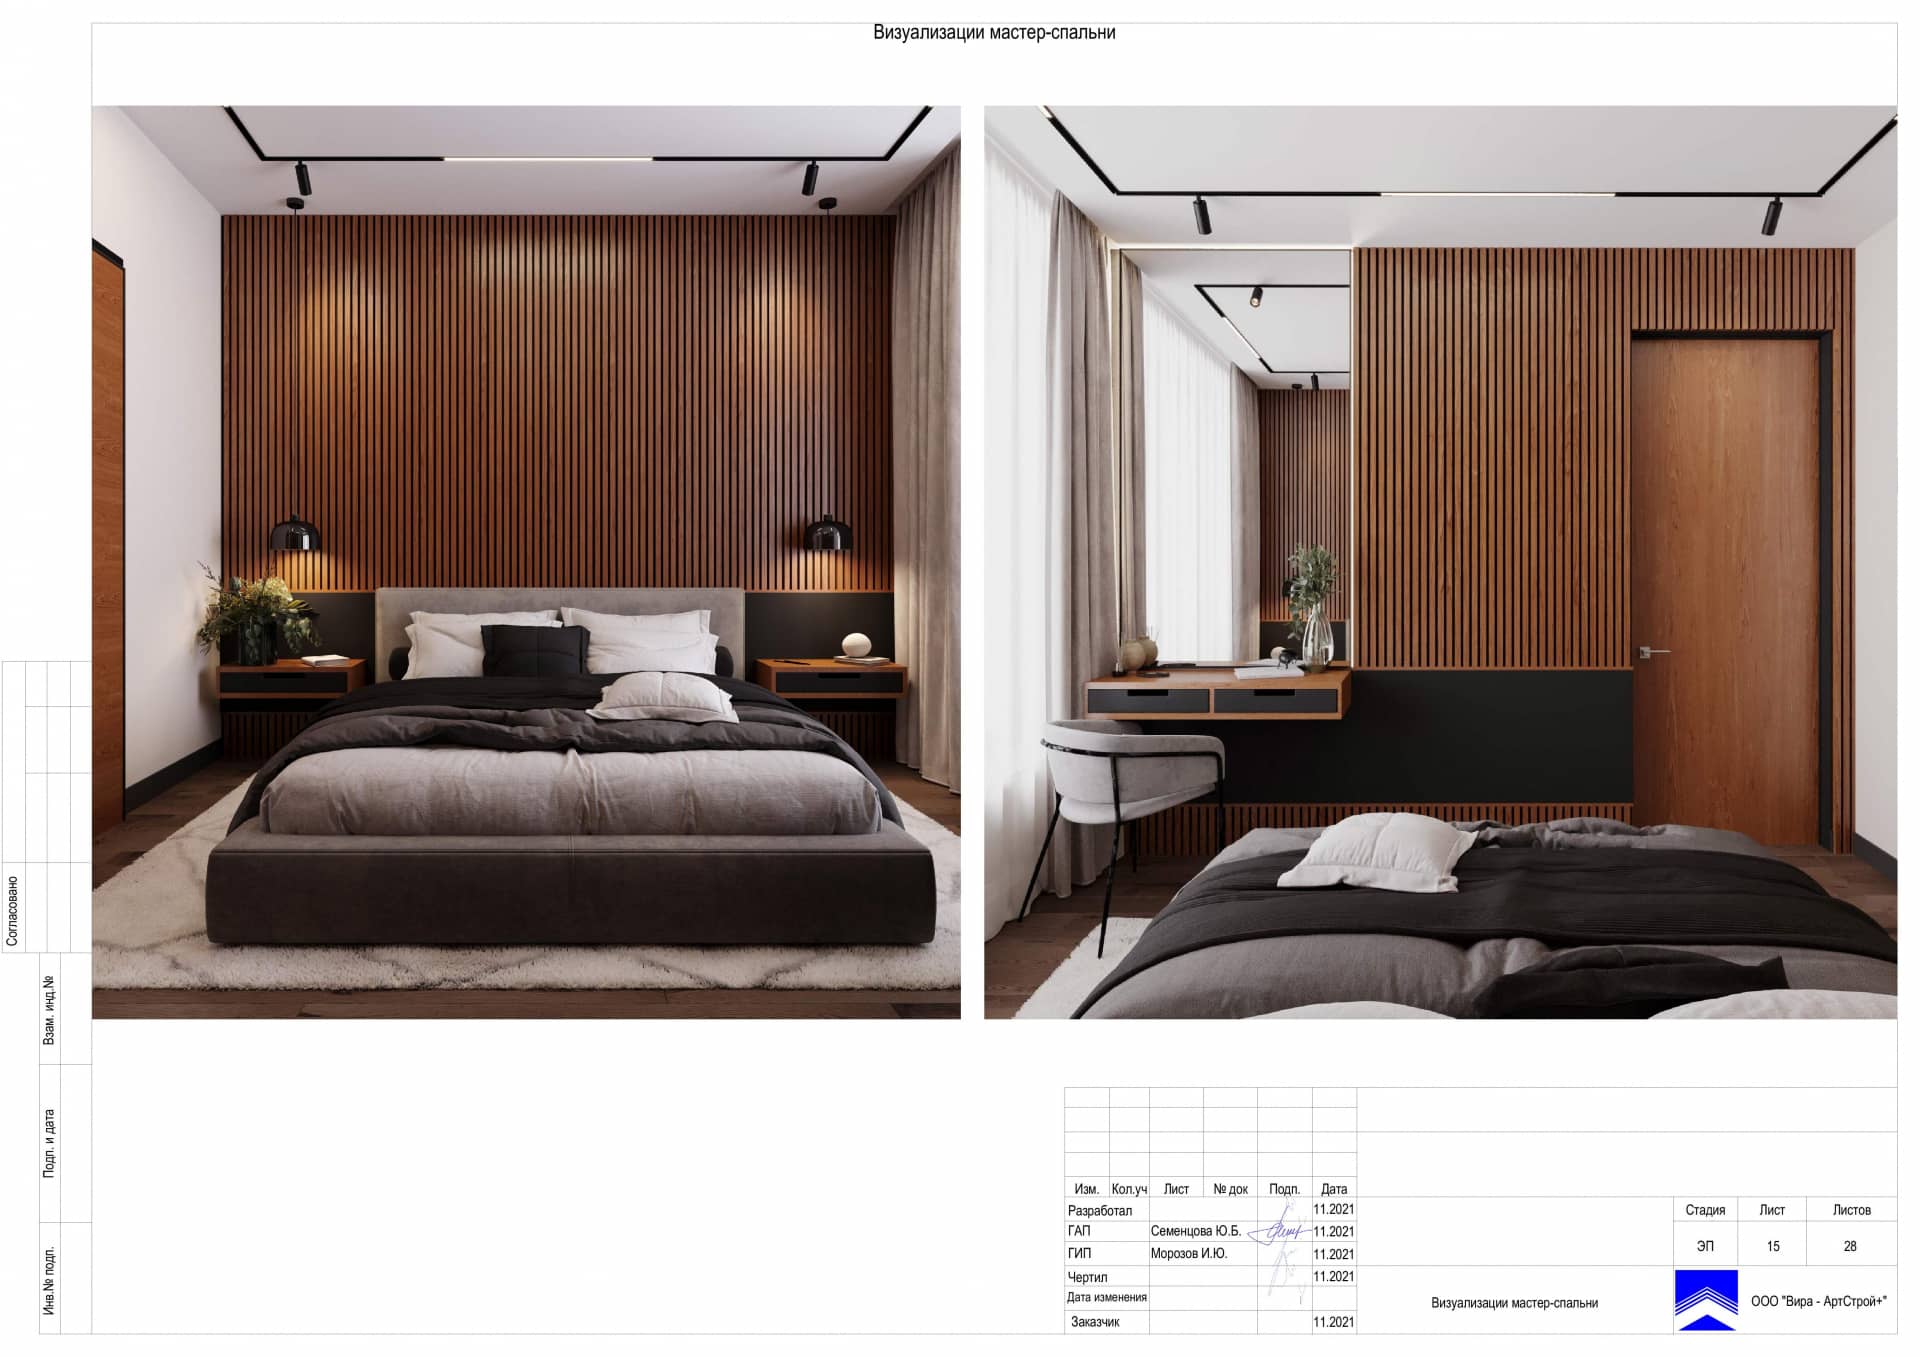 Визуализация мастер спальни, квартира 100 м² в ЖК «Джаз»